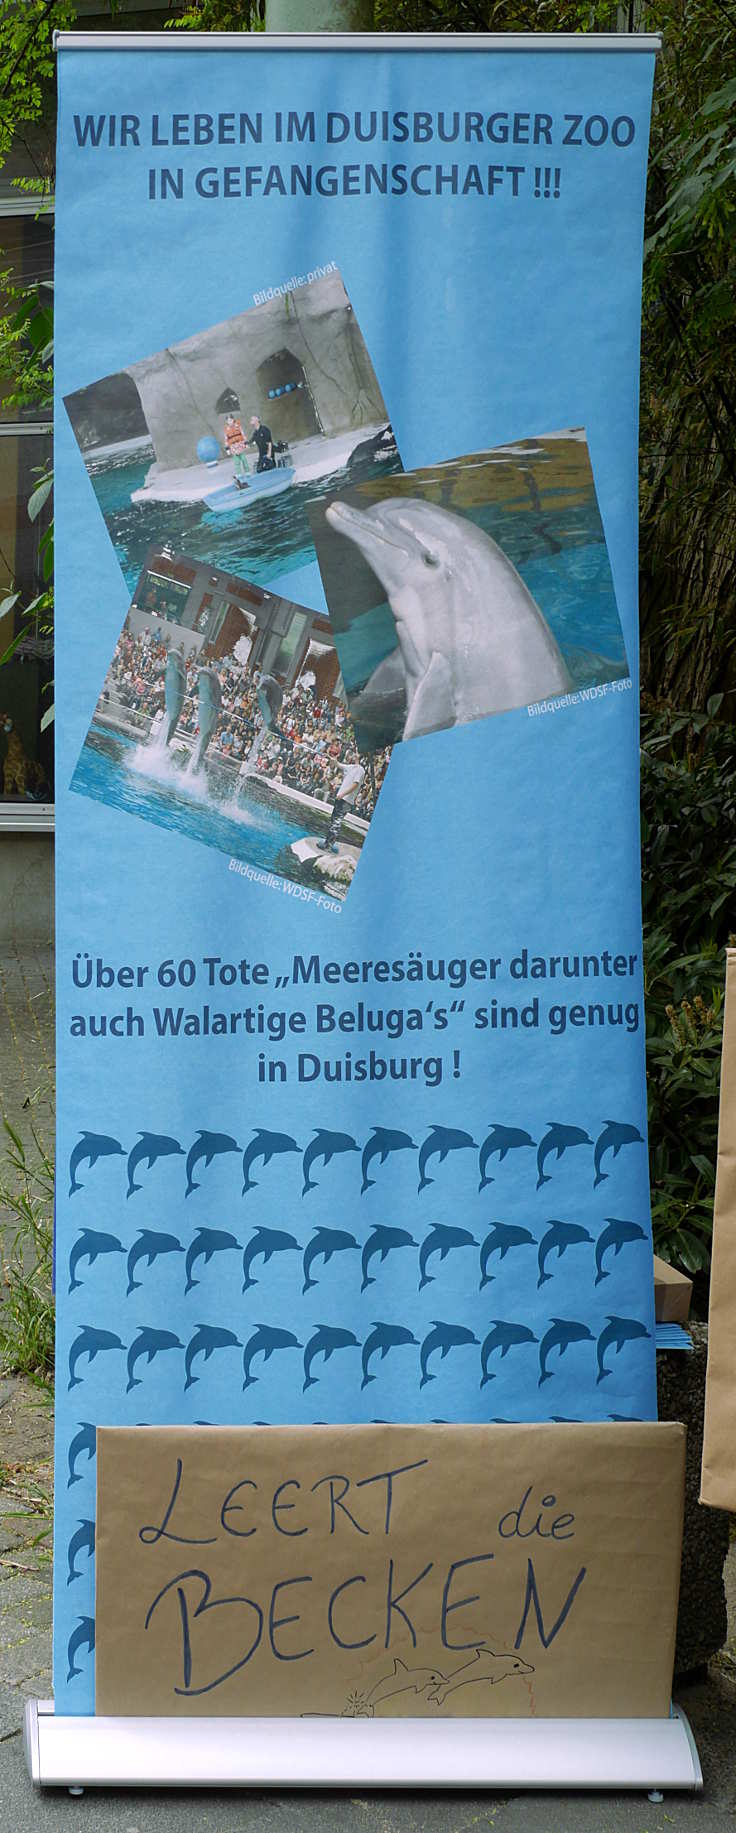 © www.mutbuergerdokus.de: Mahnwache gegen das Delfinarium